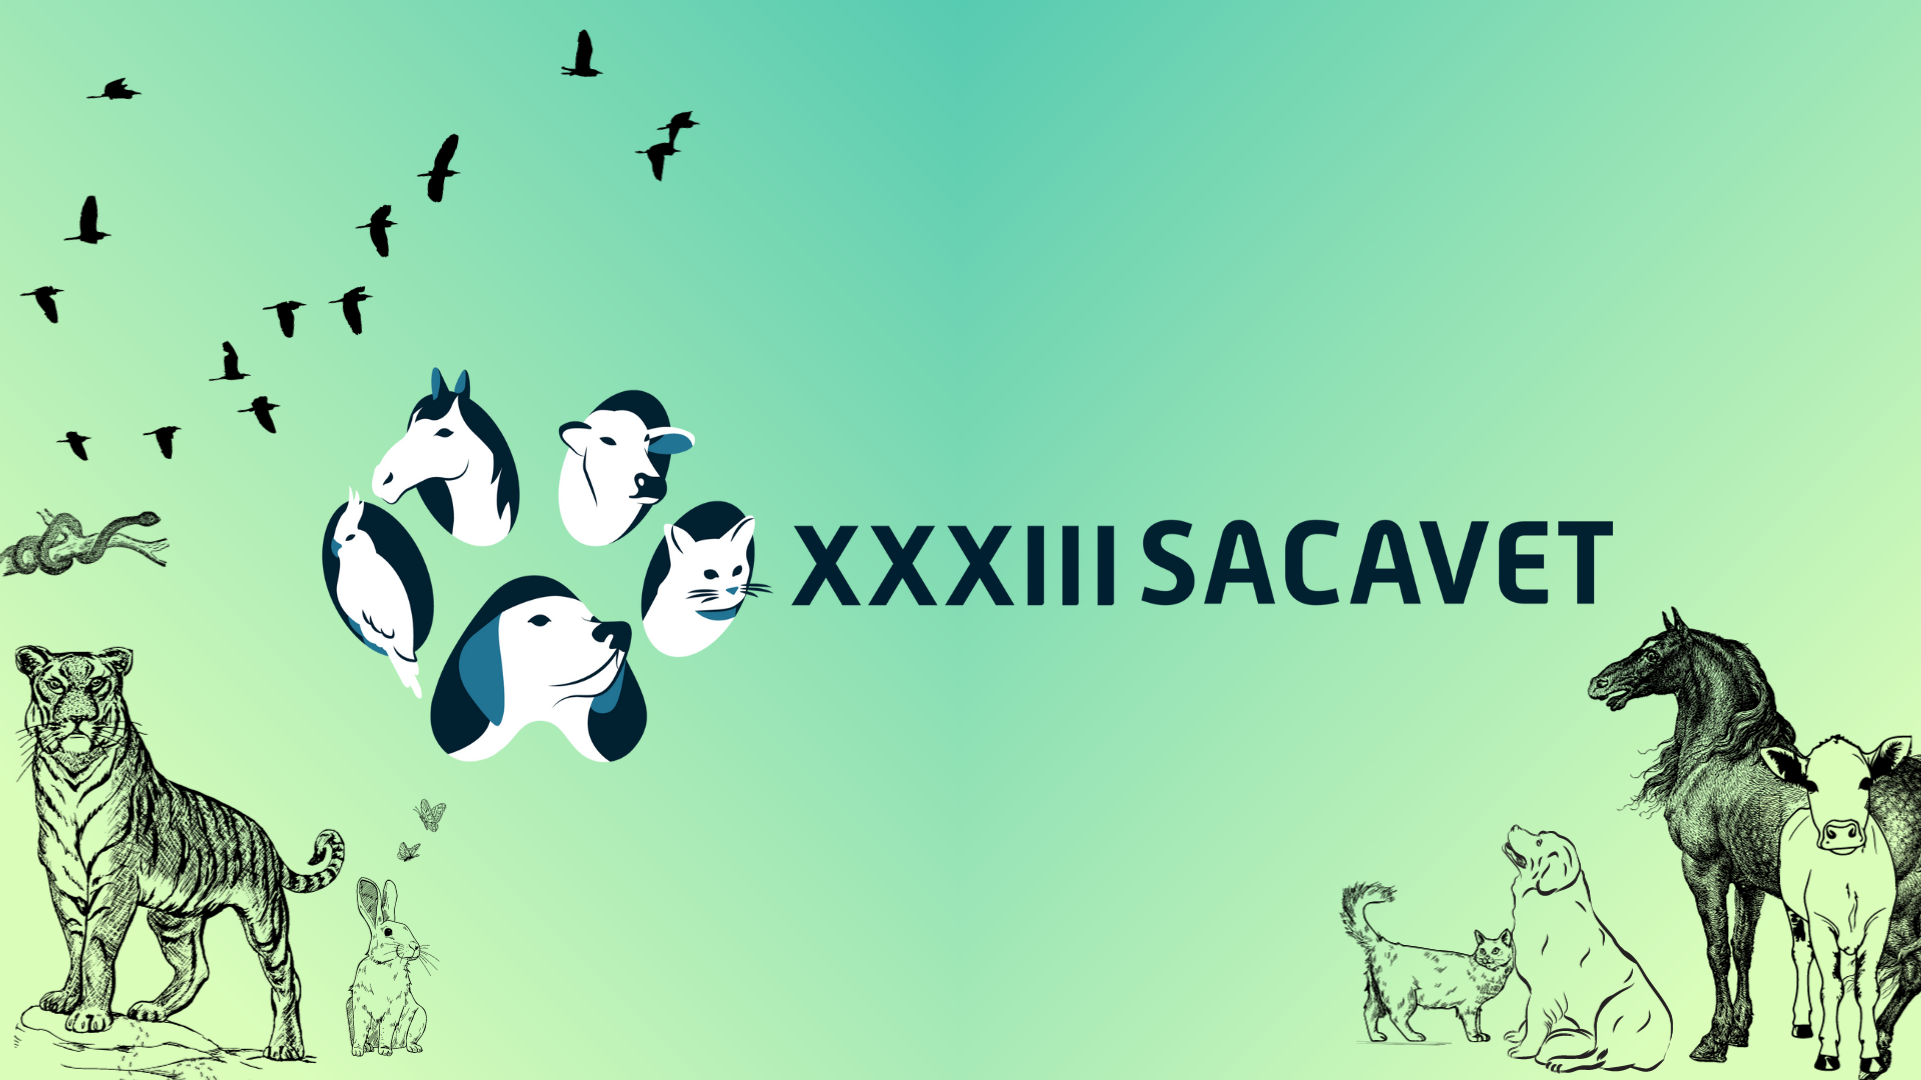 Logo do XXXIII SACAVET